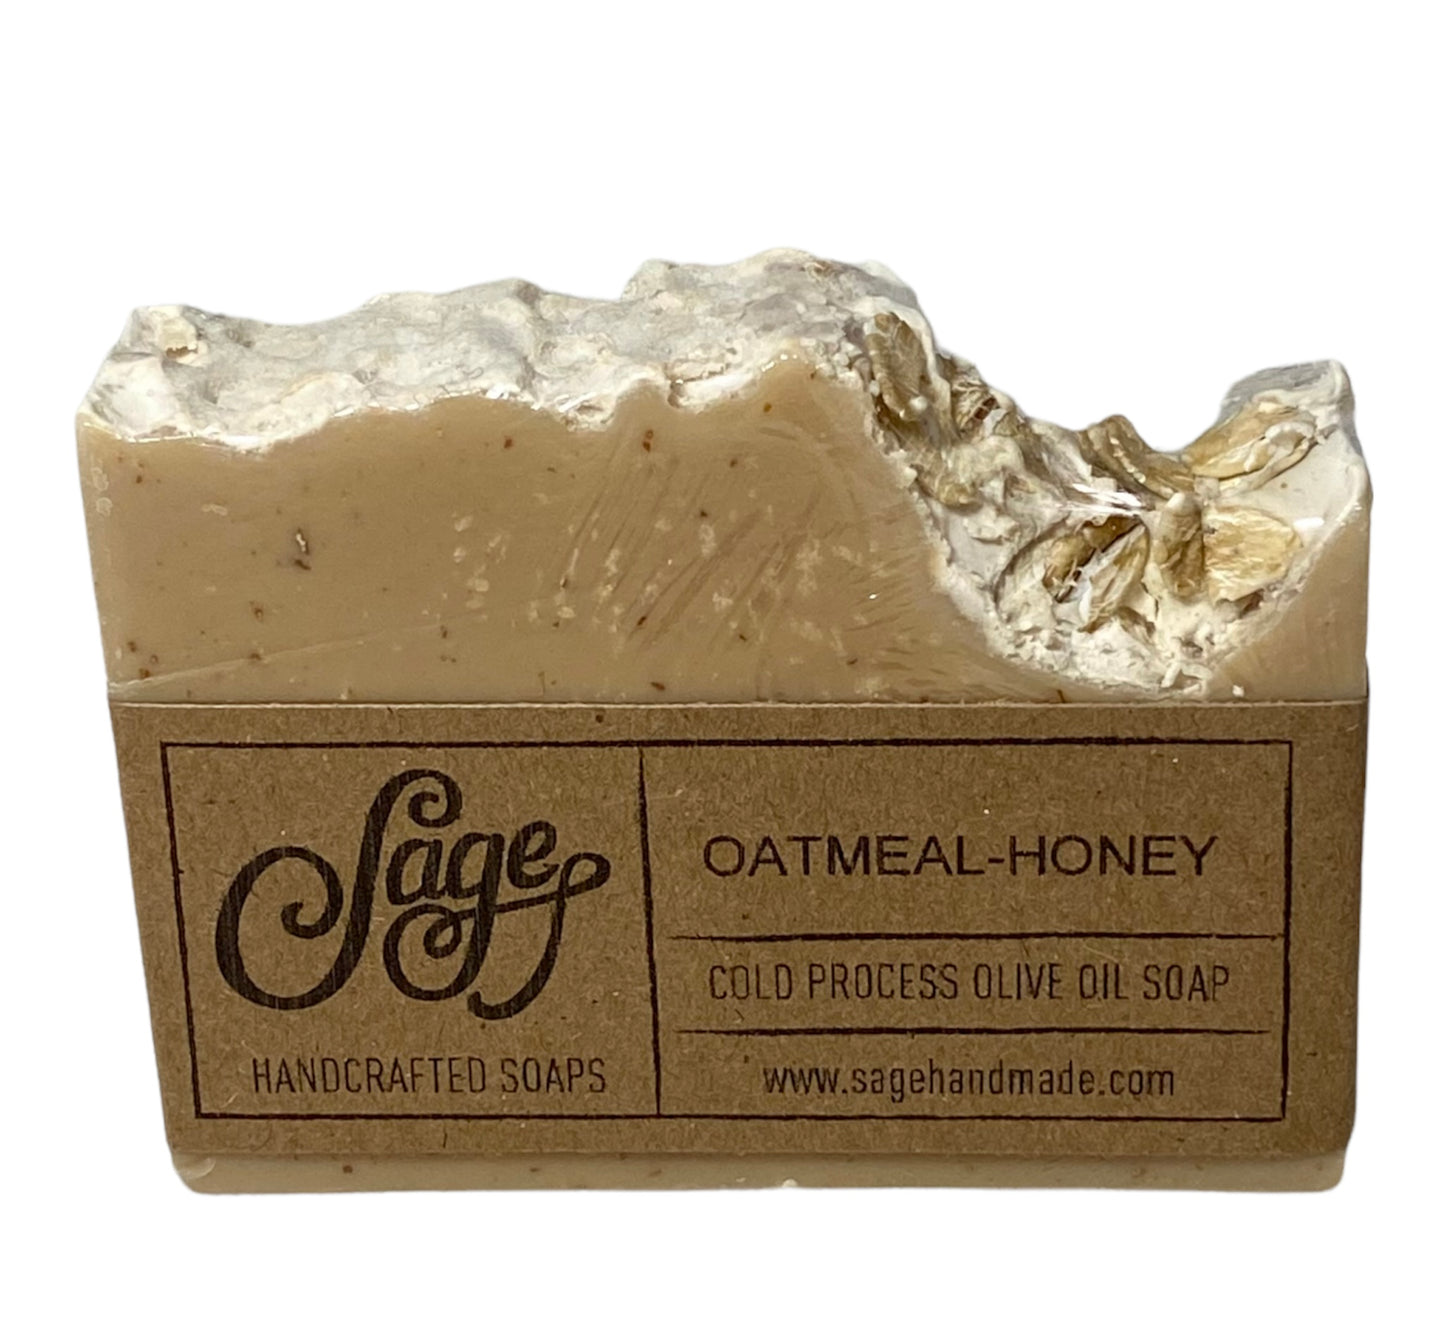 Oatmeal - Honey Soap